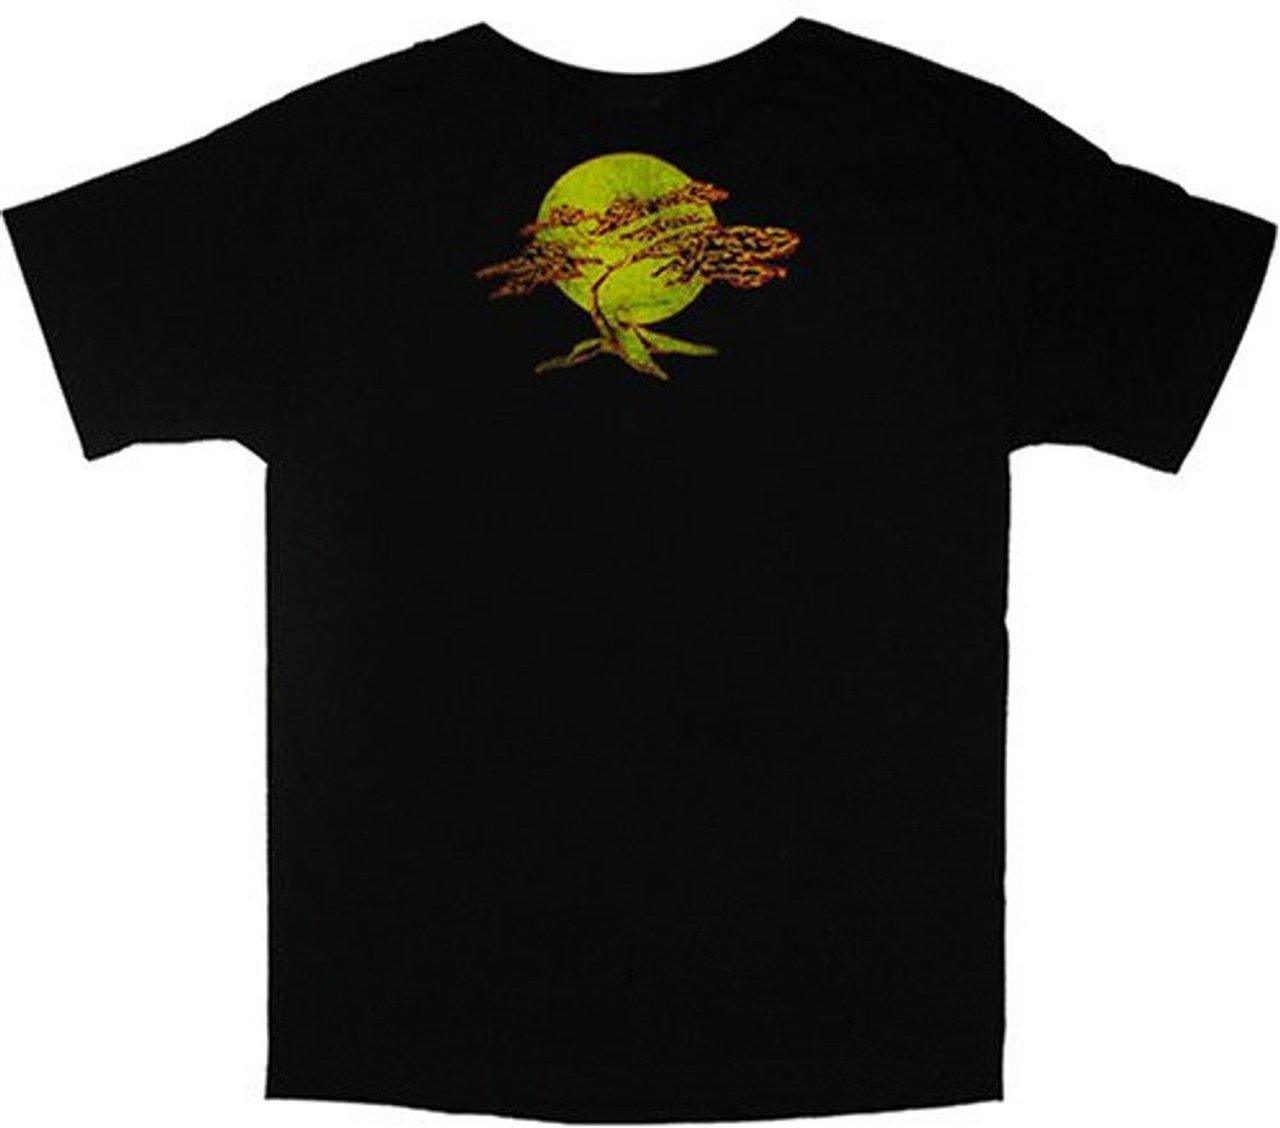 Karate Kid Banzai Washed Black T-shirt-tvso